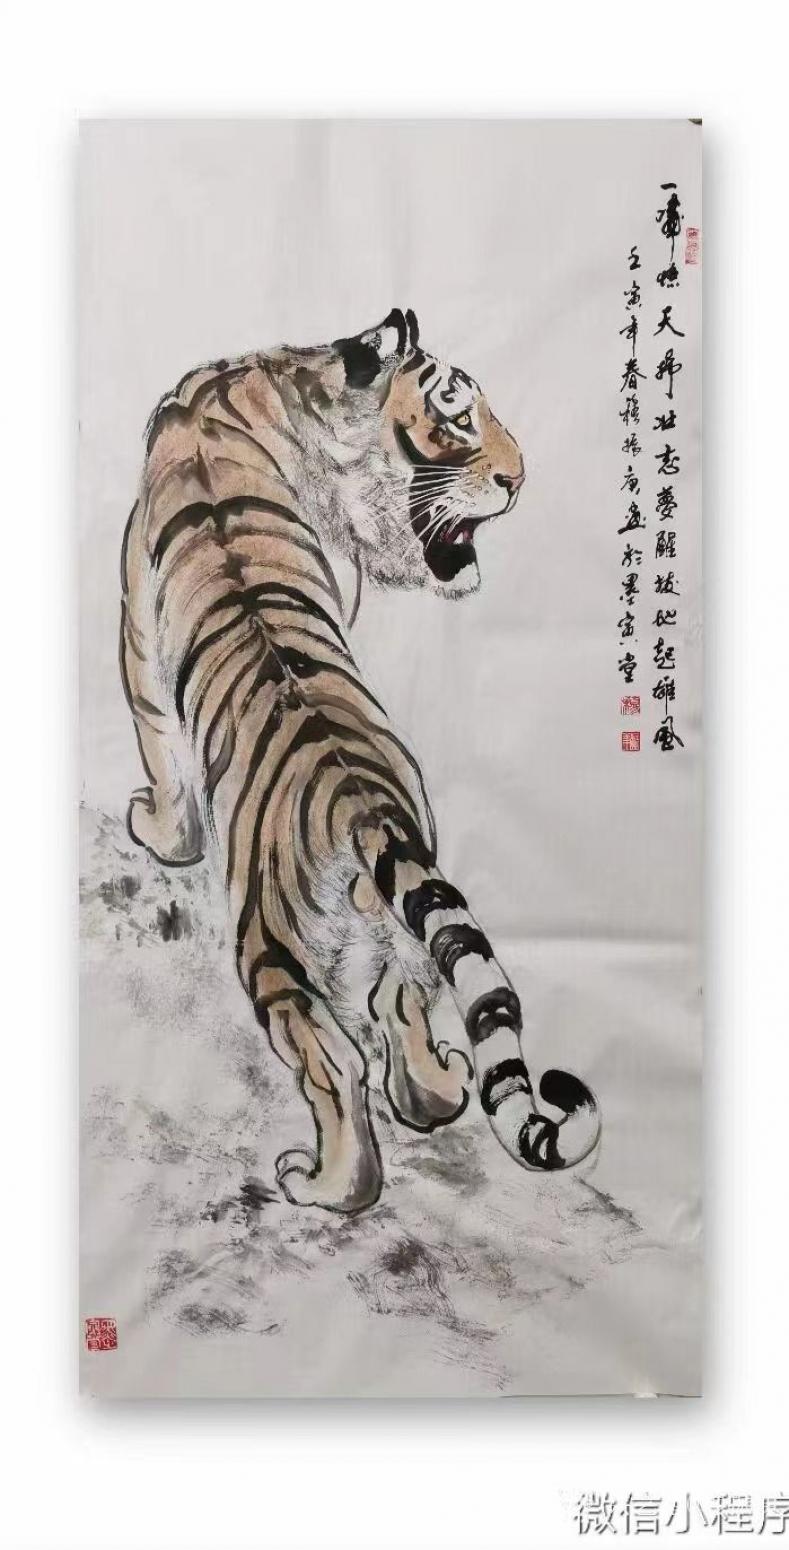 穆振庚国画作品《老虎-一啸惊天》